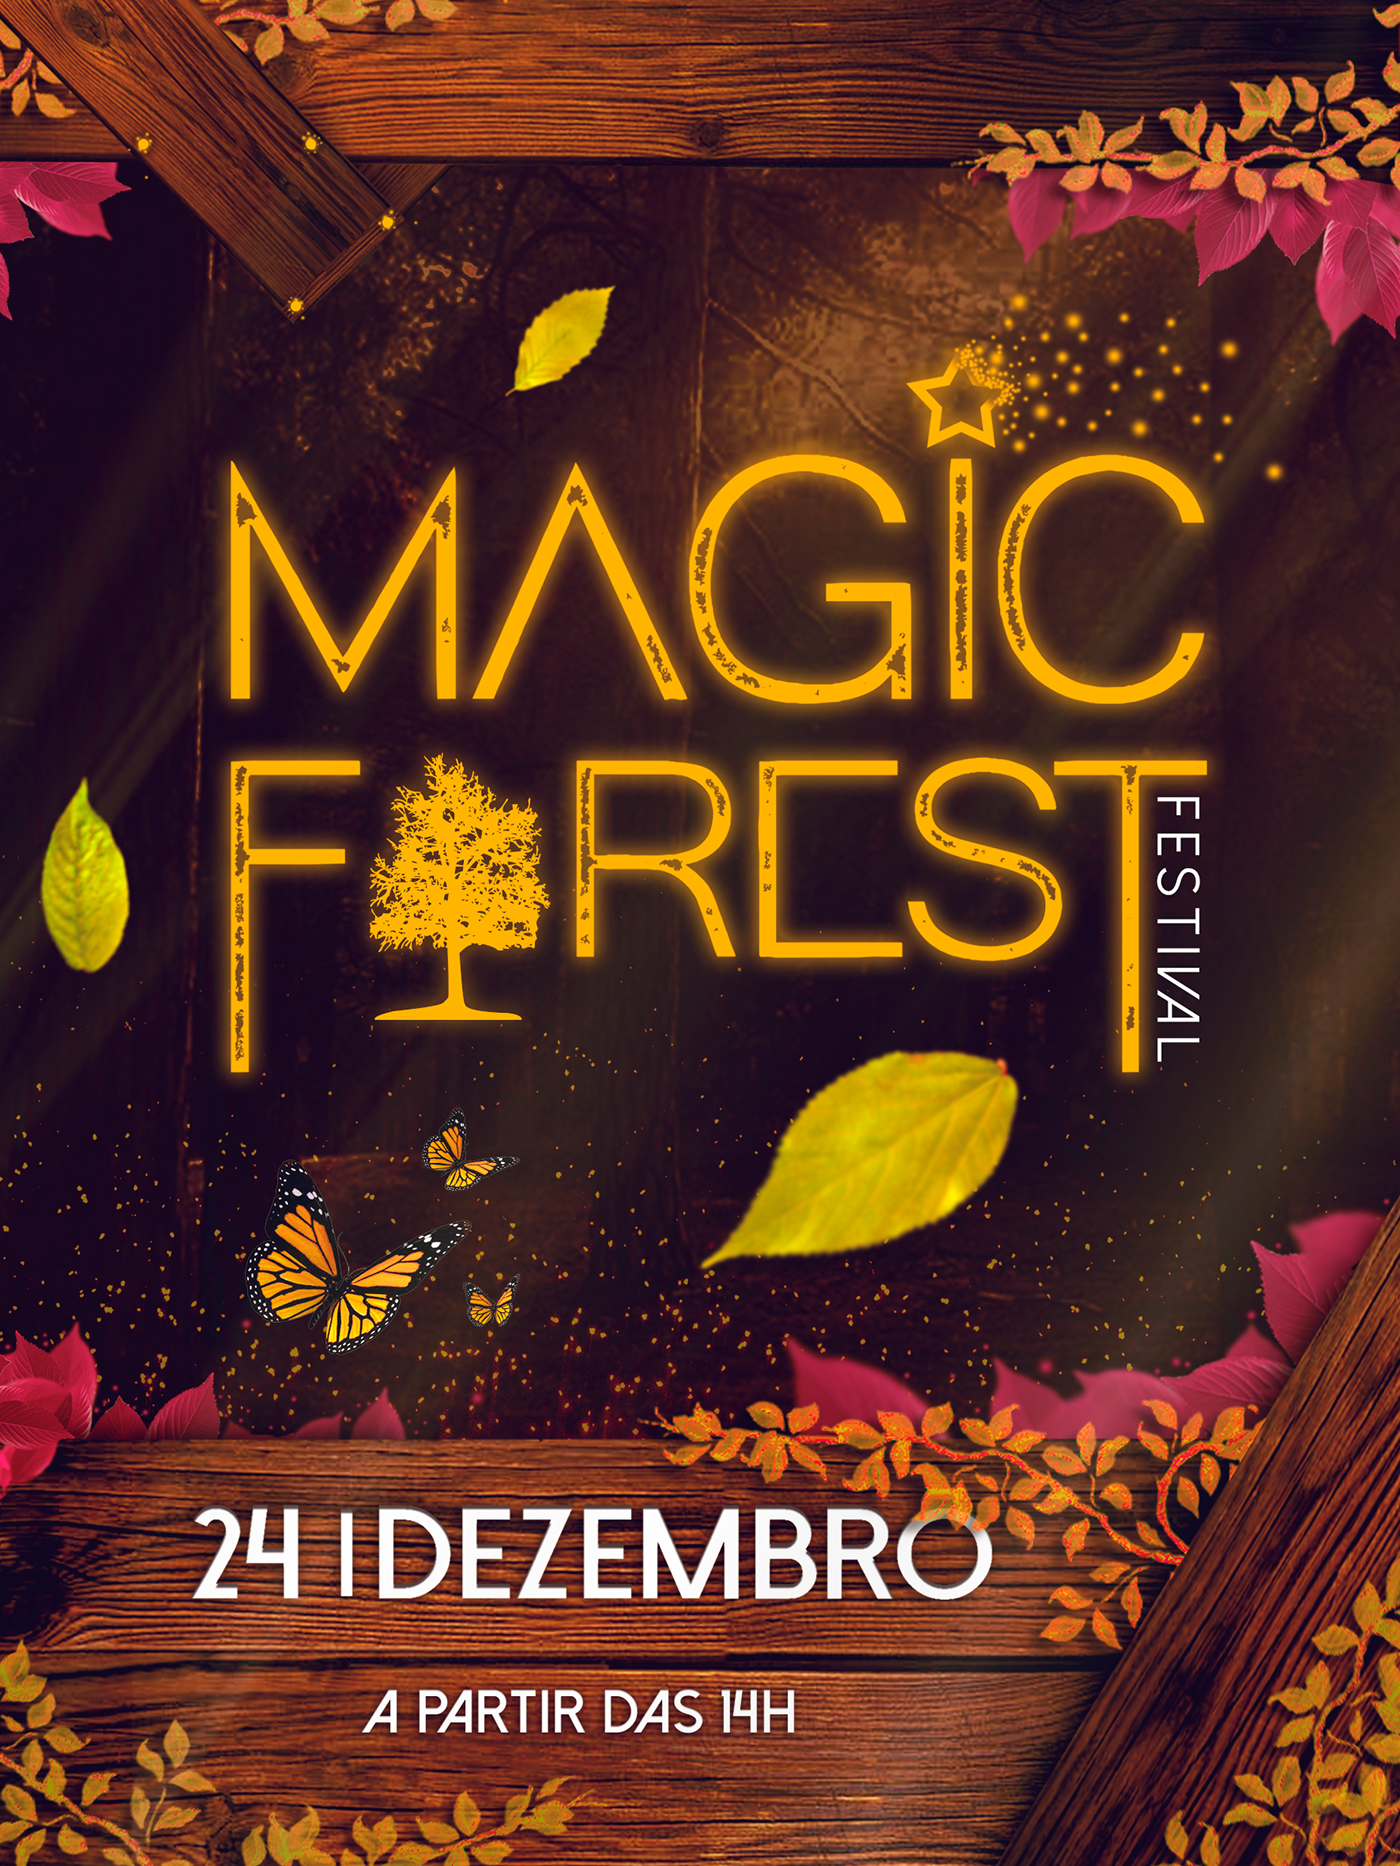 Adobe Photoshop forest Magic   dj eletronic Events Evento floresta publicidade logo